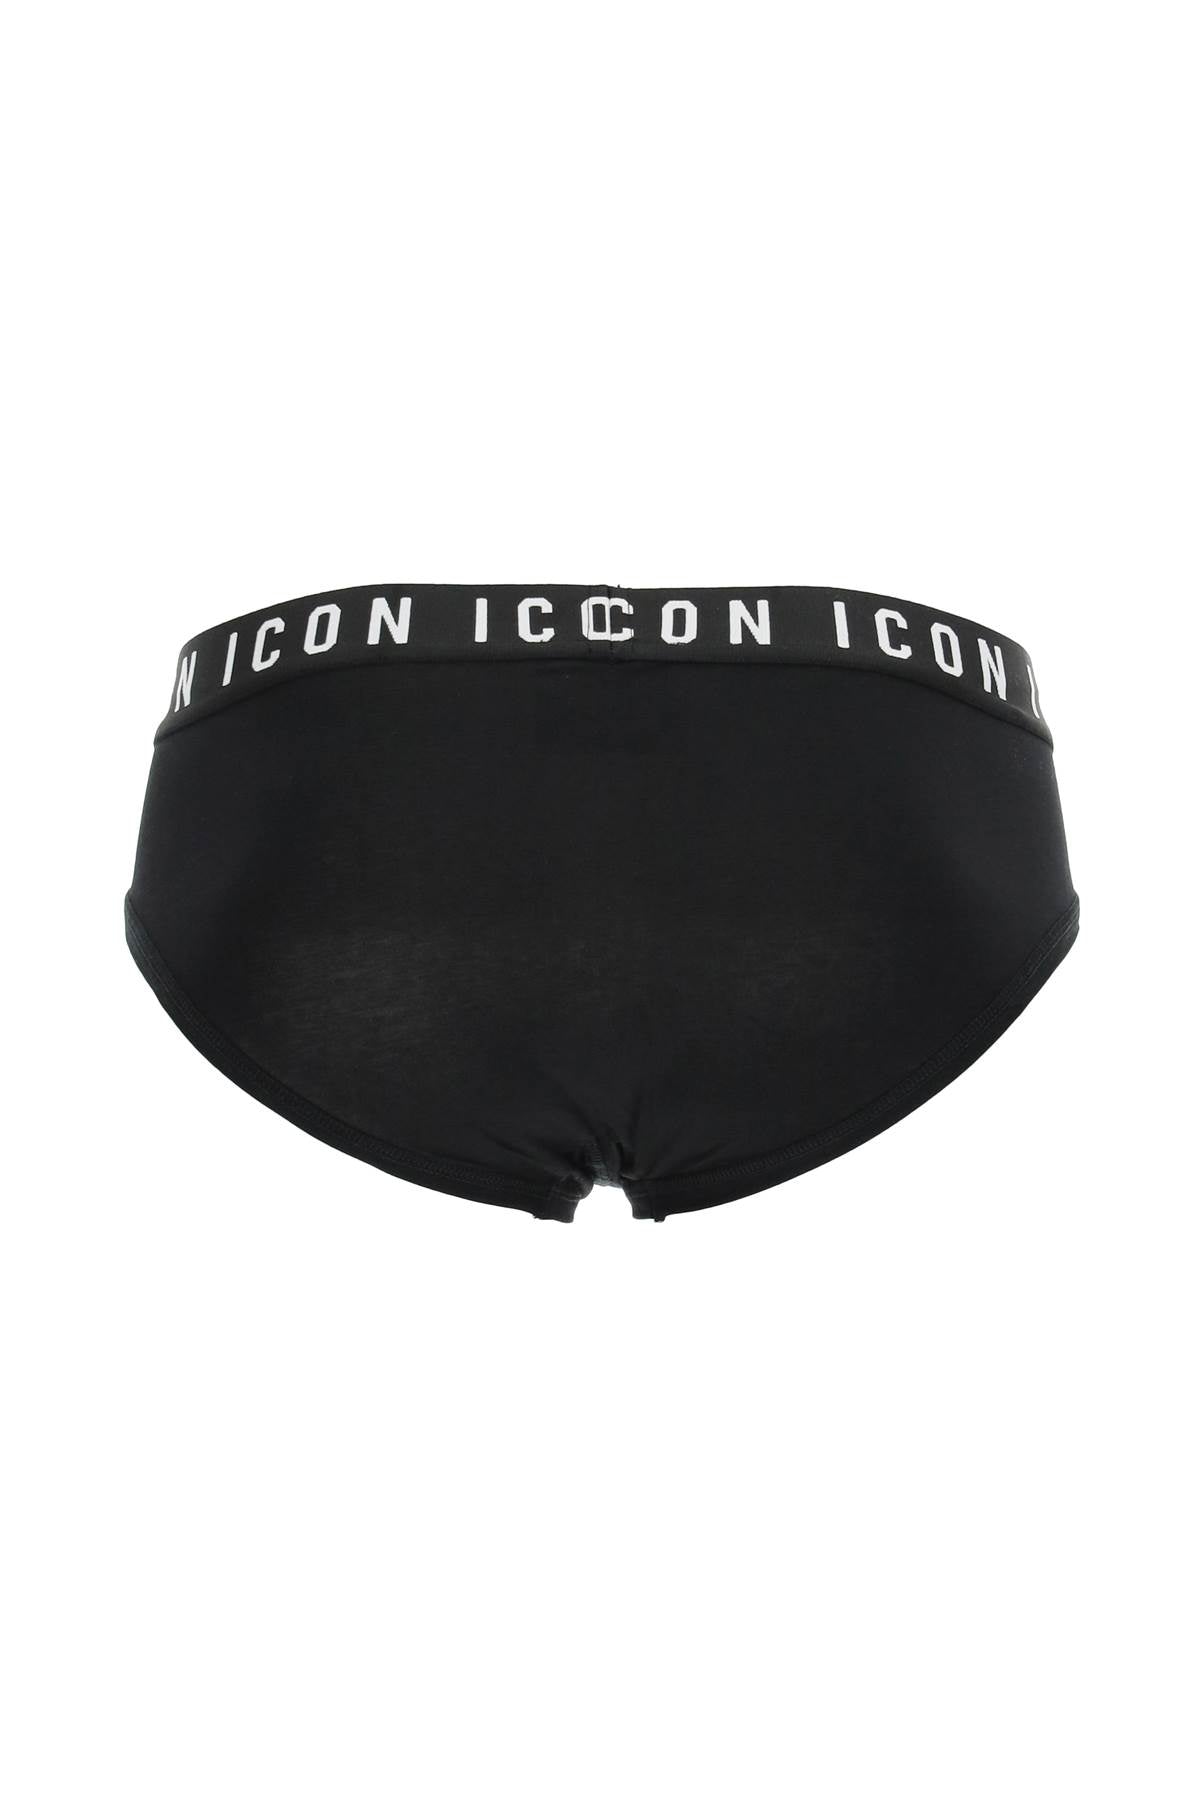 Dsquared2 'icon' underwear brief-1